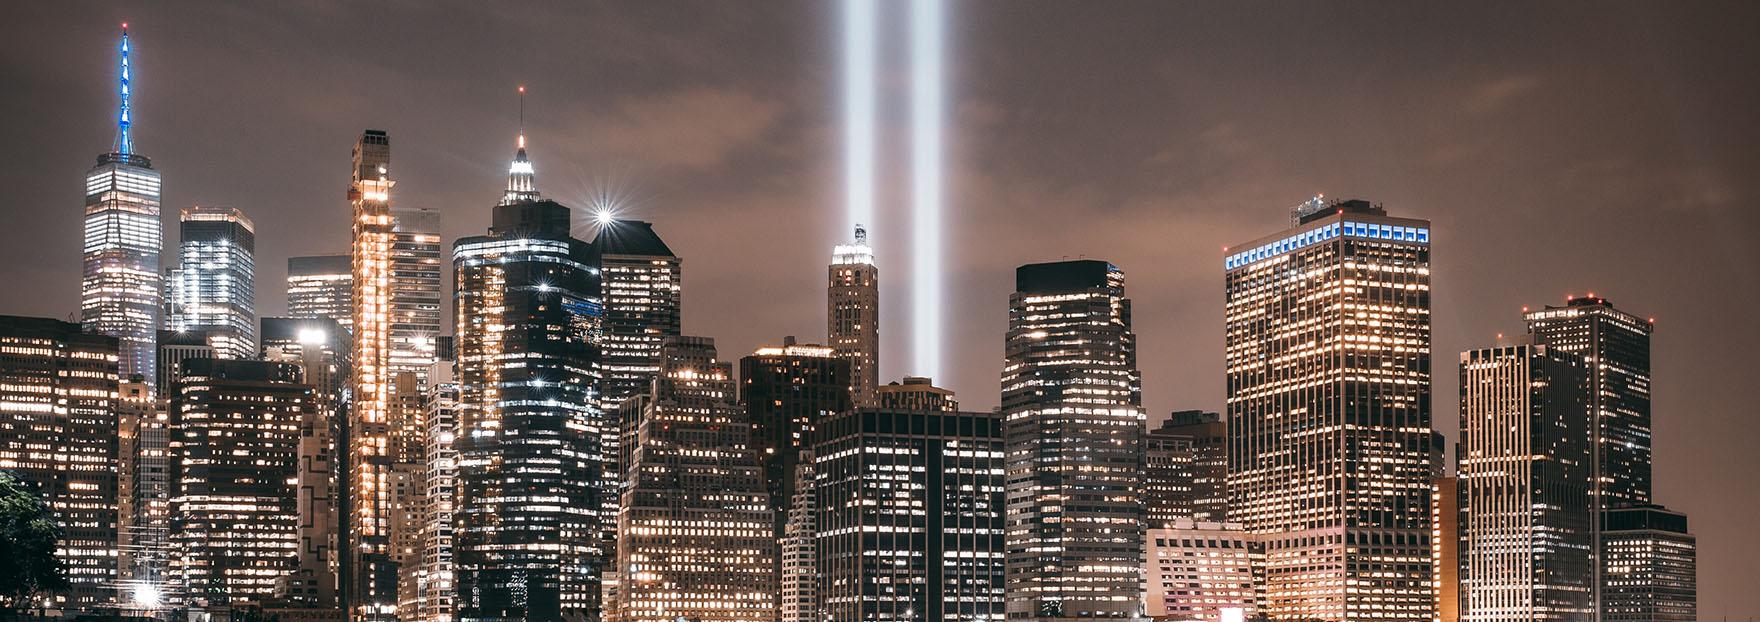 双光条象征着2001年9月11日世界贸易中心的倒塌/ Lerone Pieters摄